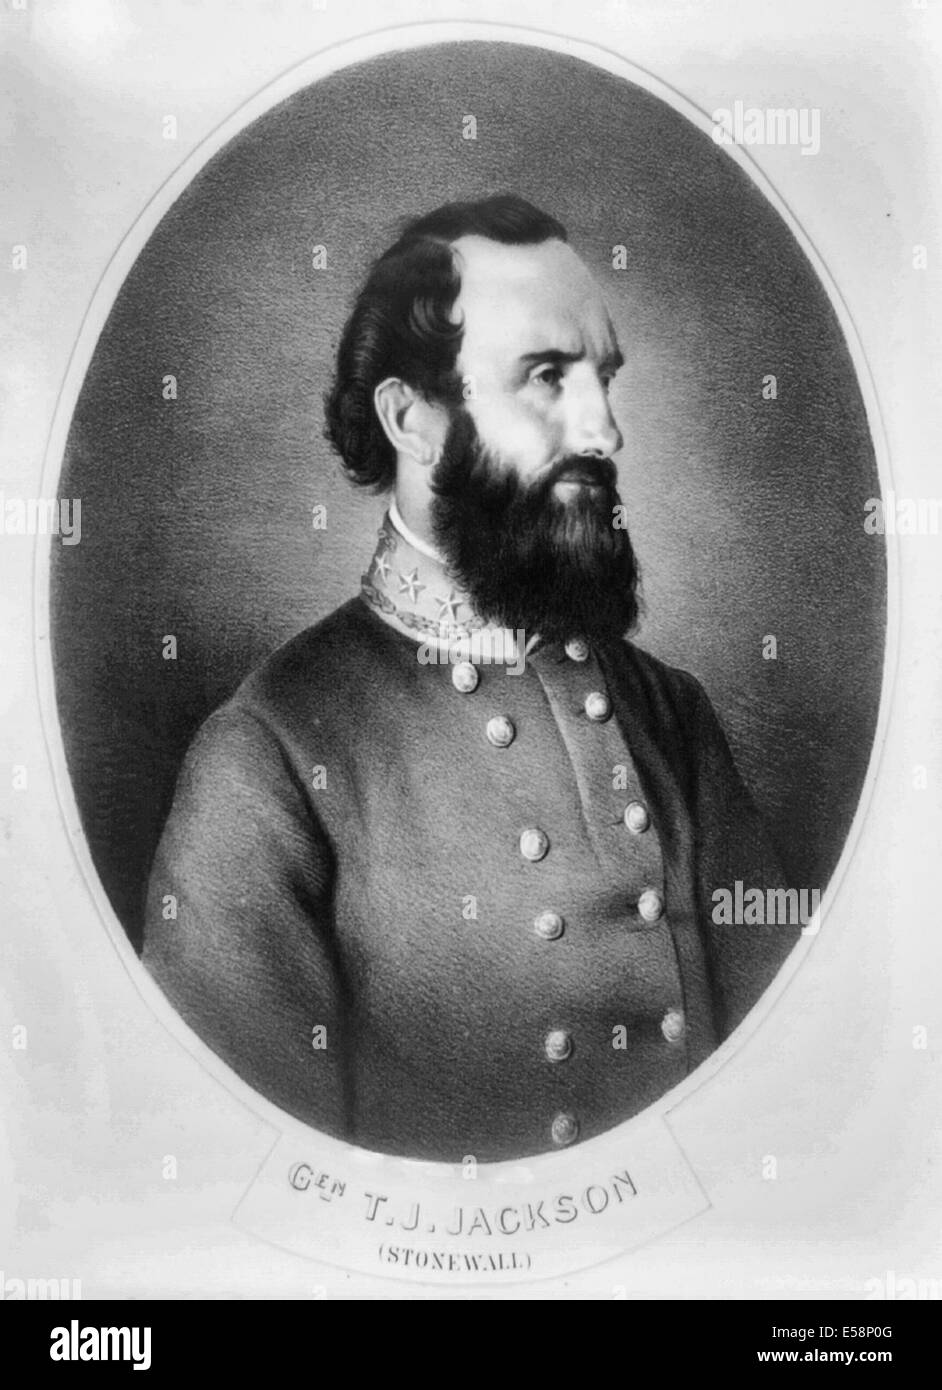 General Thomas J Stonewall Jackson, General der Konföderierten, USA Bürgerkrieg Stockfoto